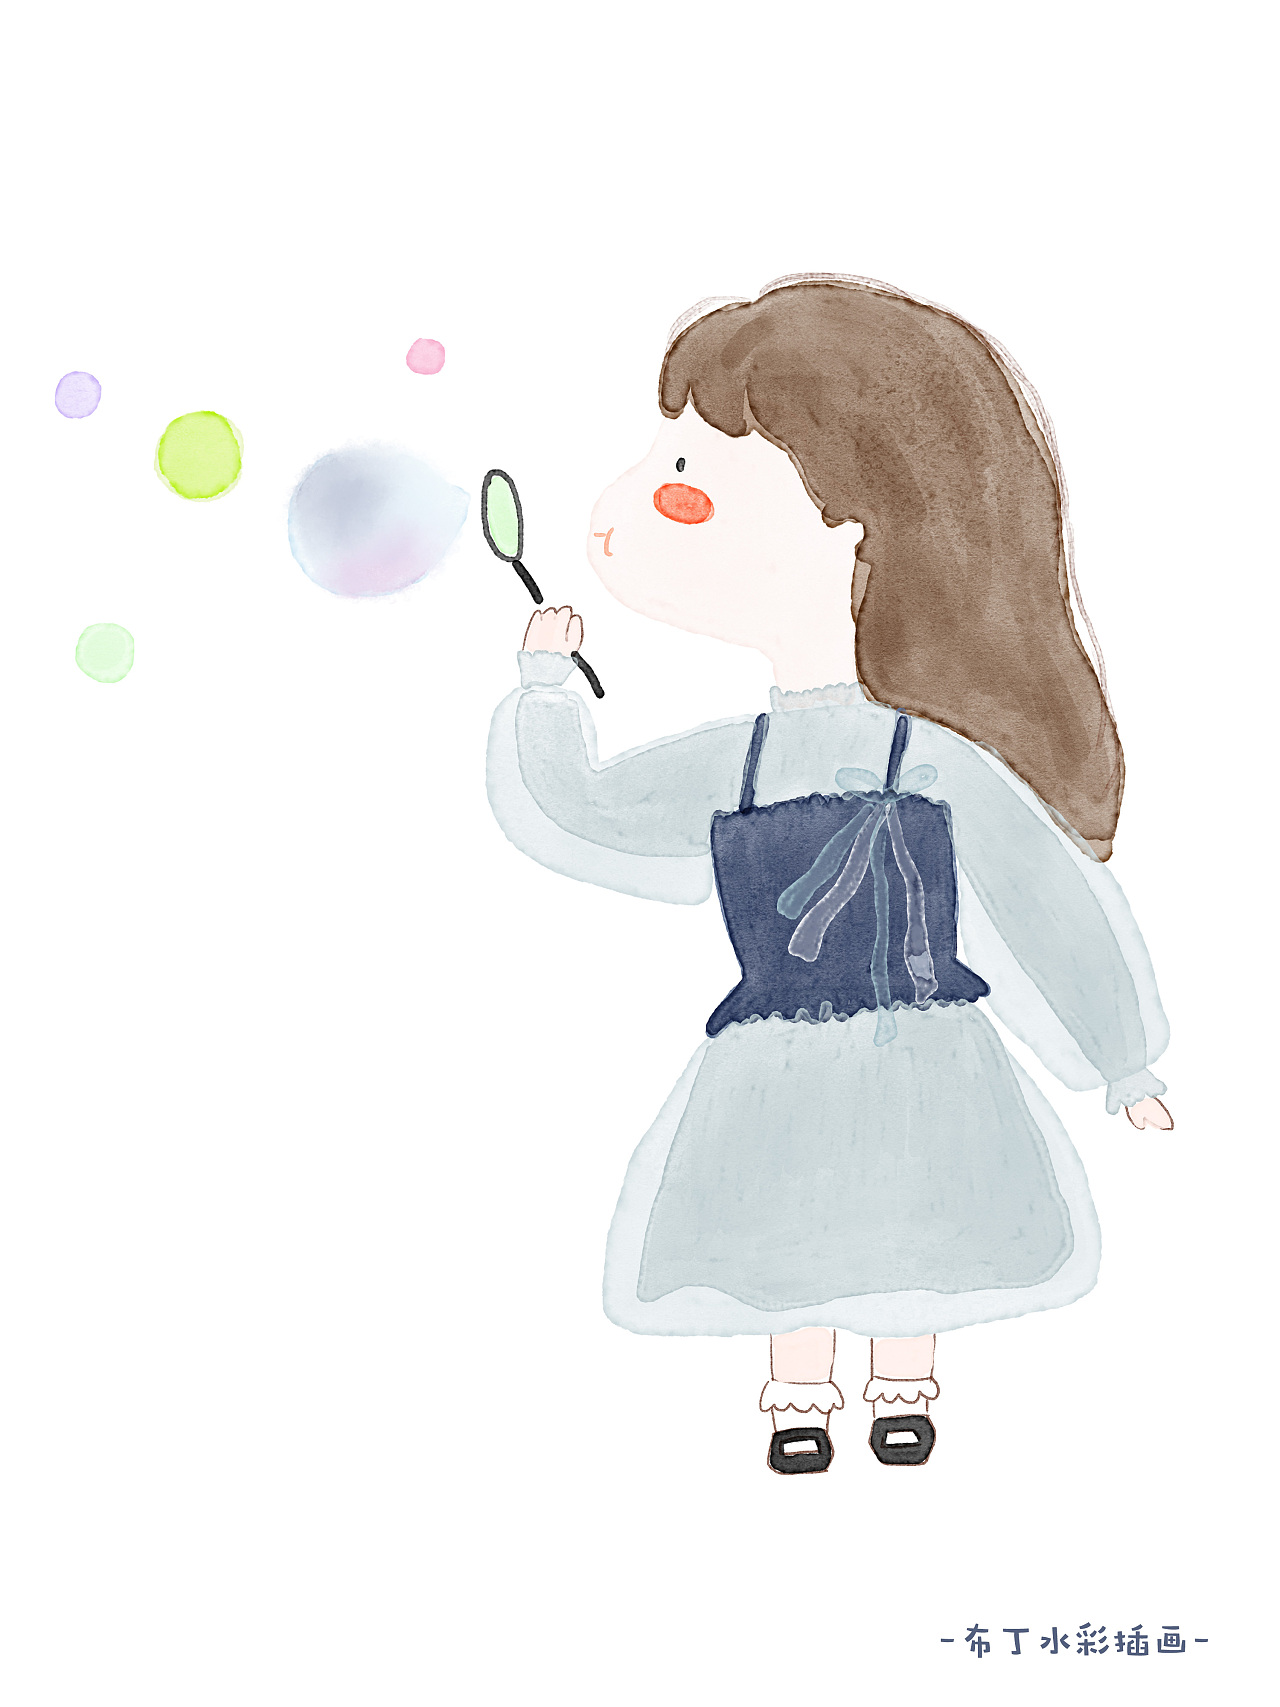 吹泡泡的小女孩画法图片